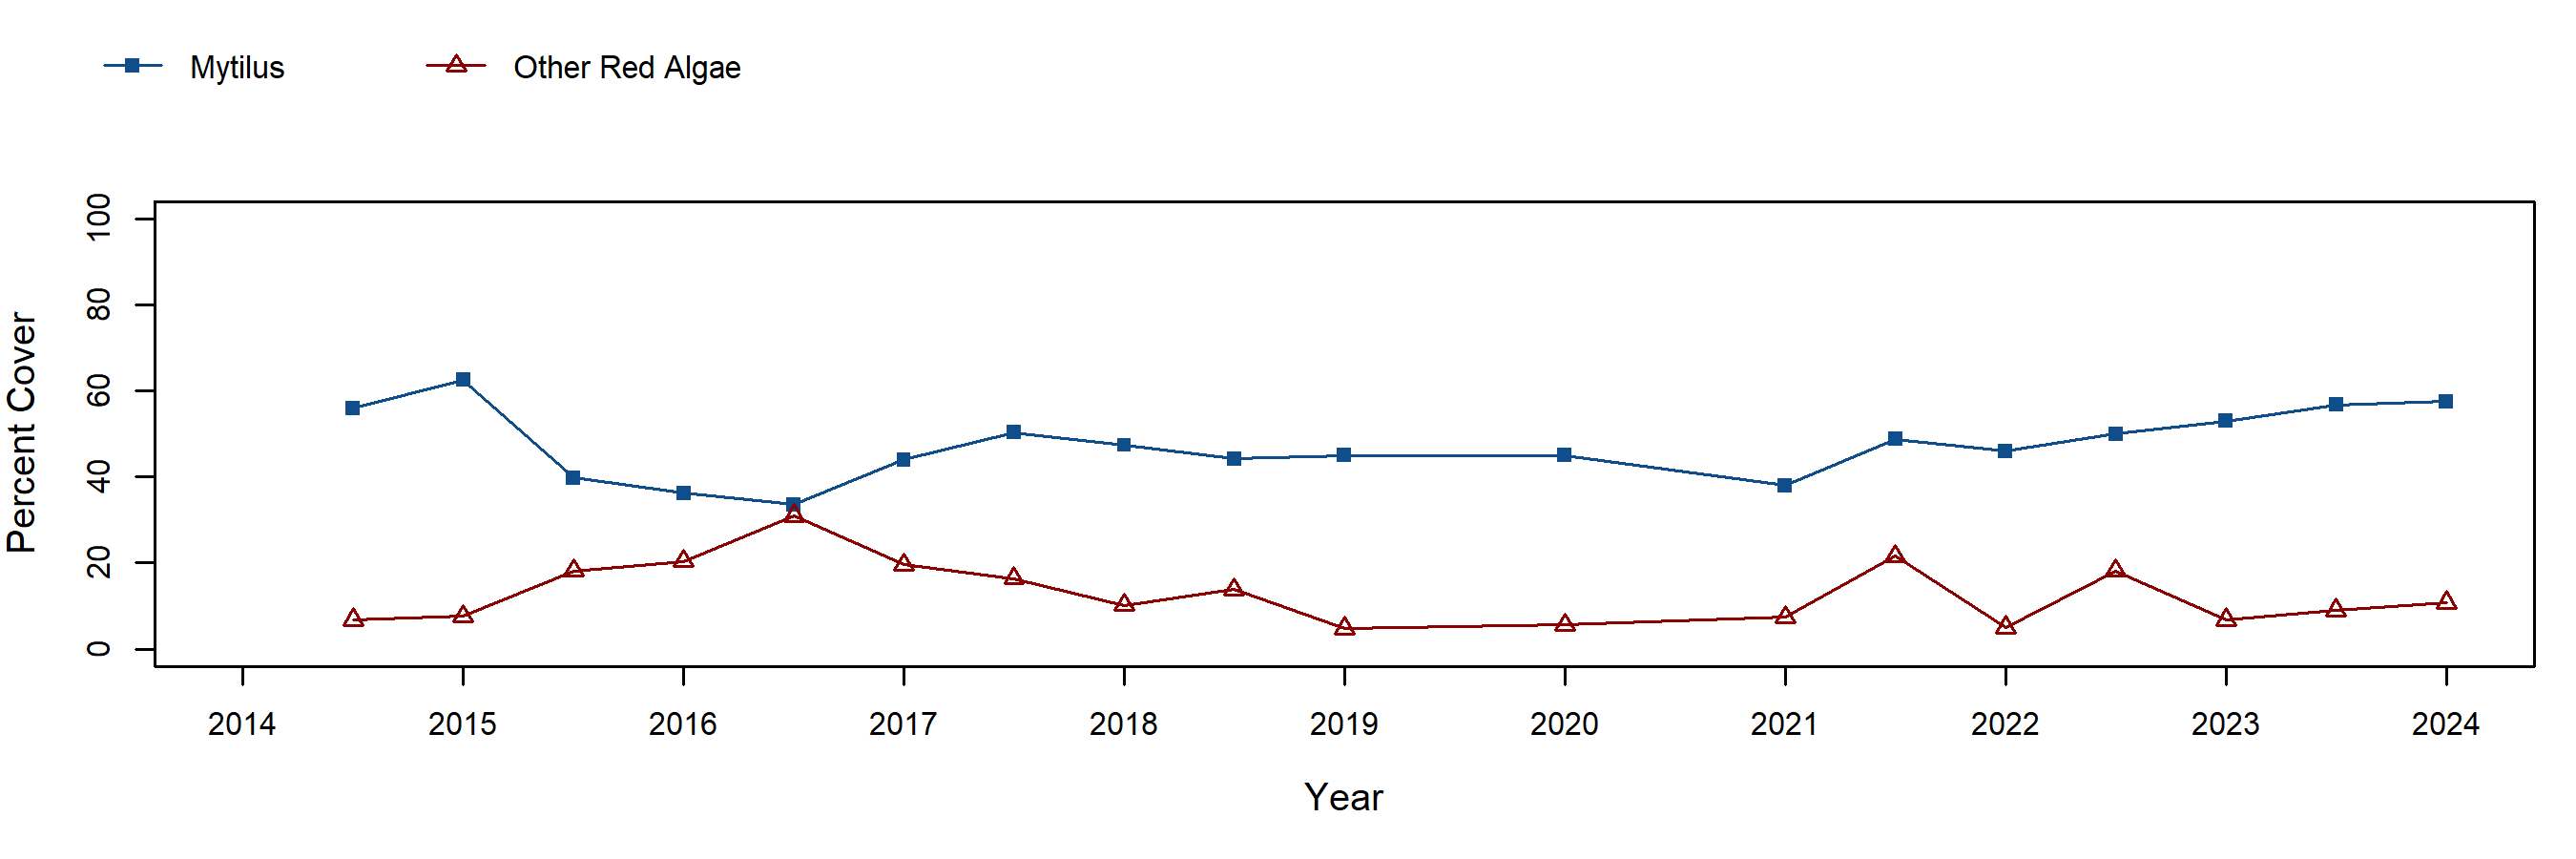 Cosign Mytilus trend plot